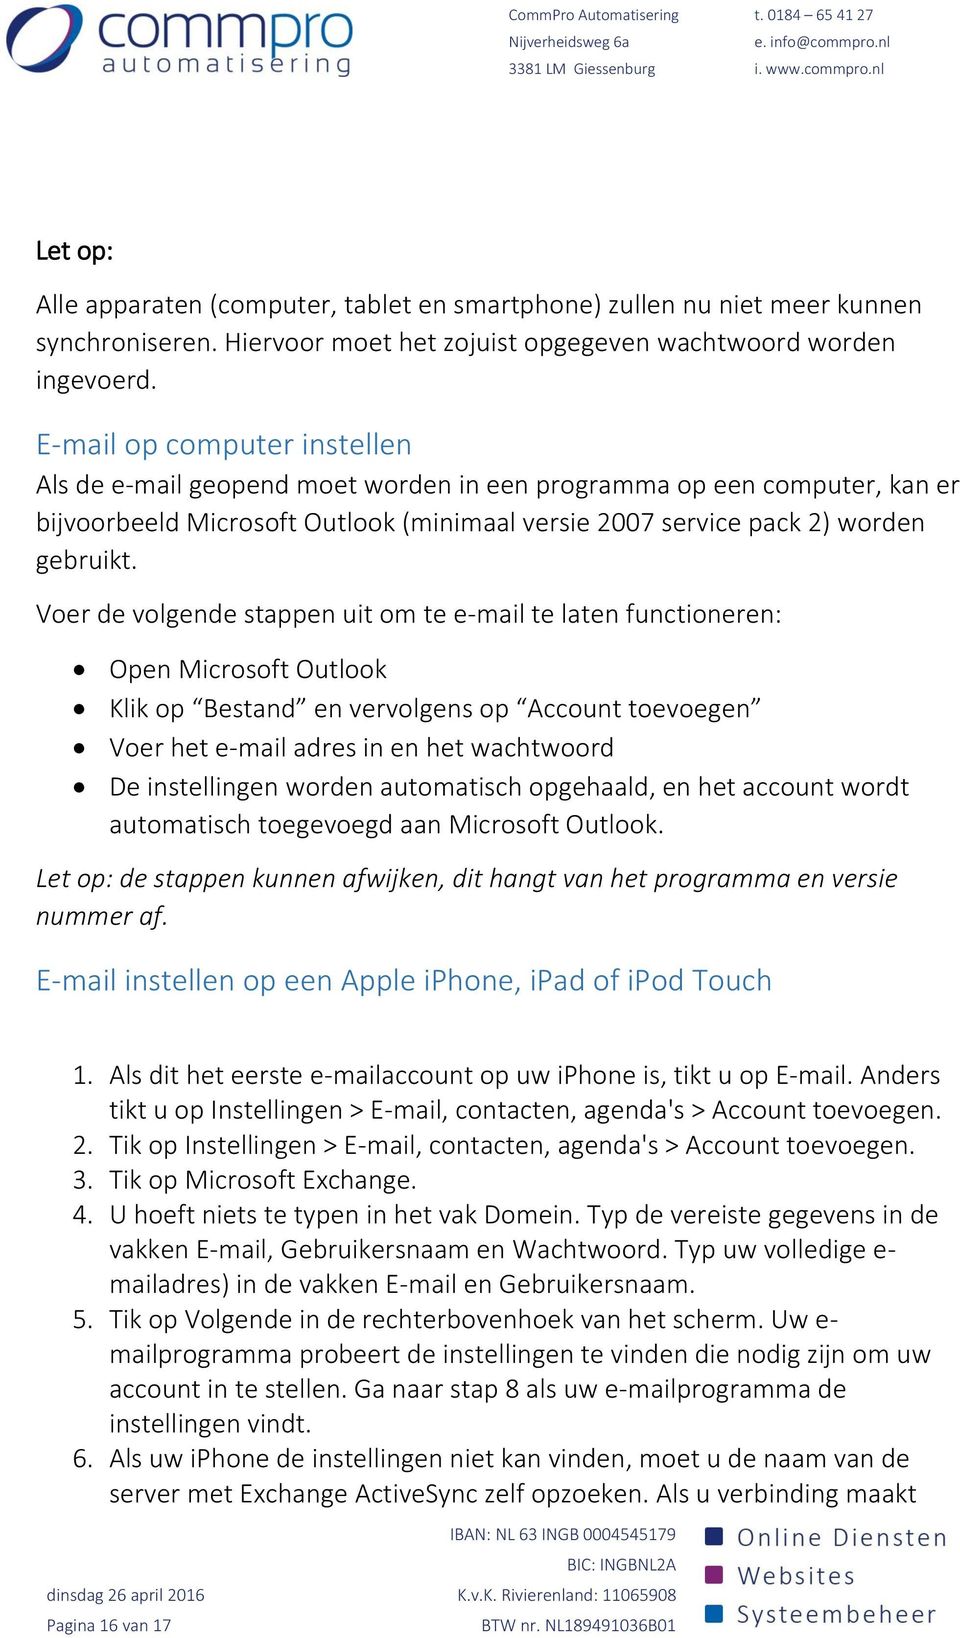 Voer de volgende stappen uit om te e-mail te laten functioneren: Open Microsoft Outlook Klik op Bestand en vervolgens op Account toevoegen Voer het e-mail adres in en het wachtwoord De instellingen